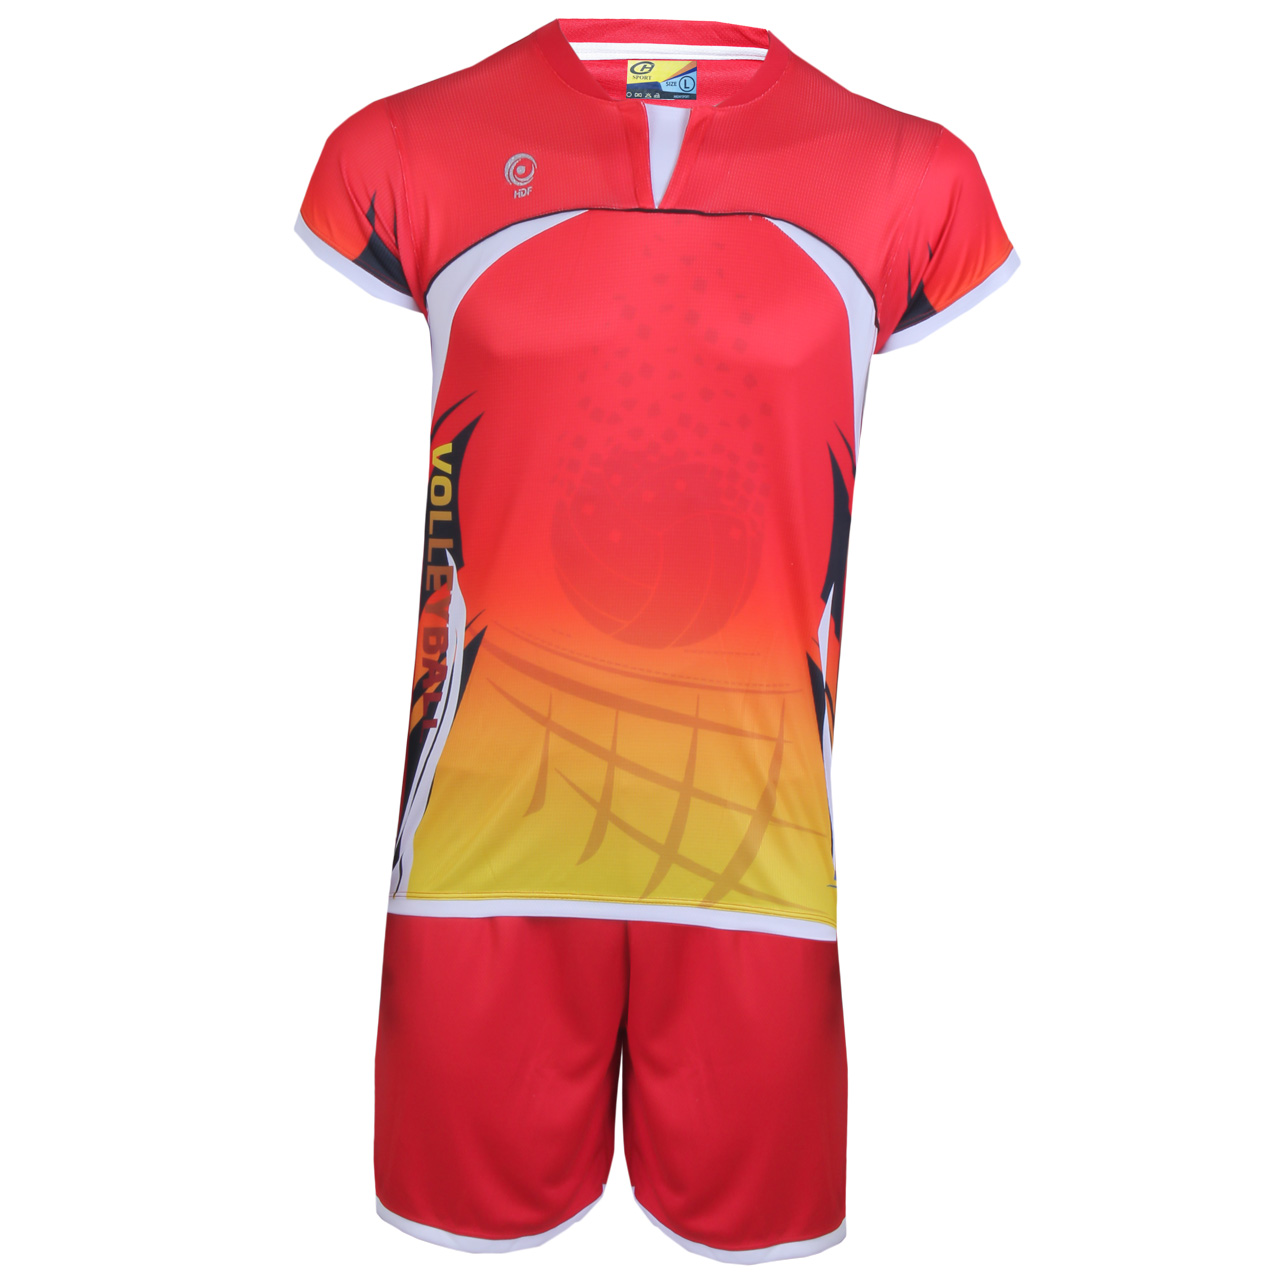 پیراهن و شورت ورزشی مردانه هدف اسپرت مدل لیگا HDF05 رنگ قرمز